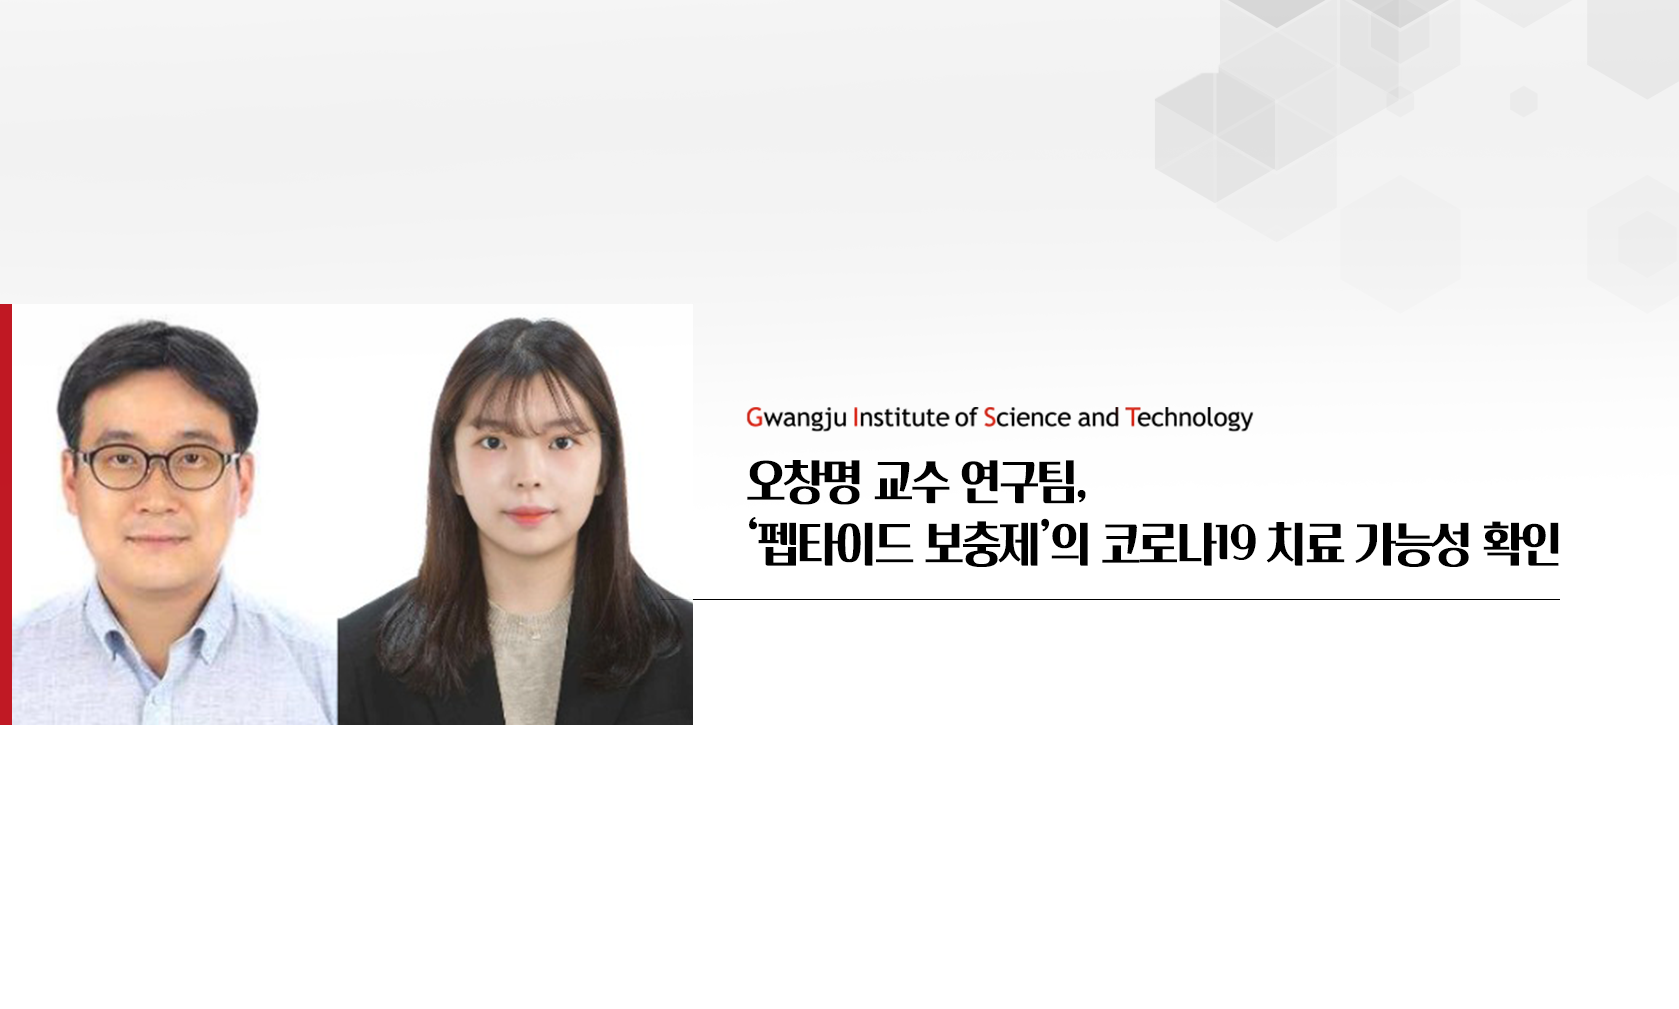 오창명 교수 연구팀, '펩타이드 보충제'의 코로나19 치료 가능성 확인